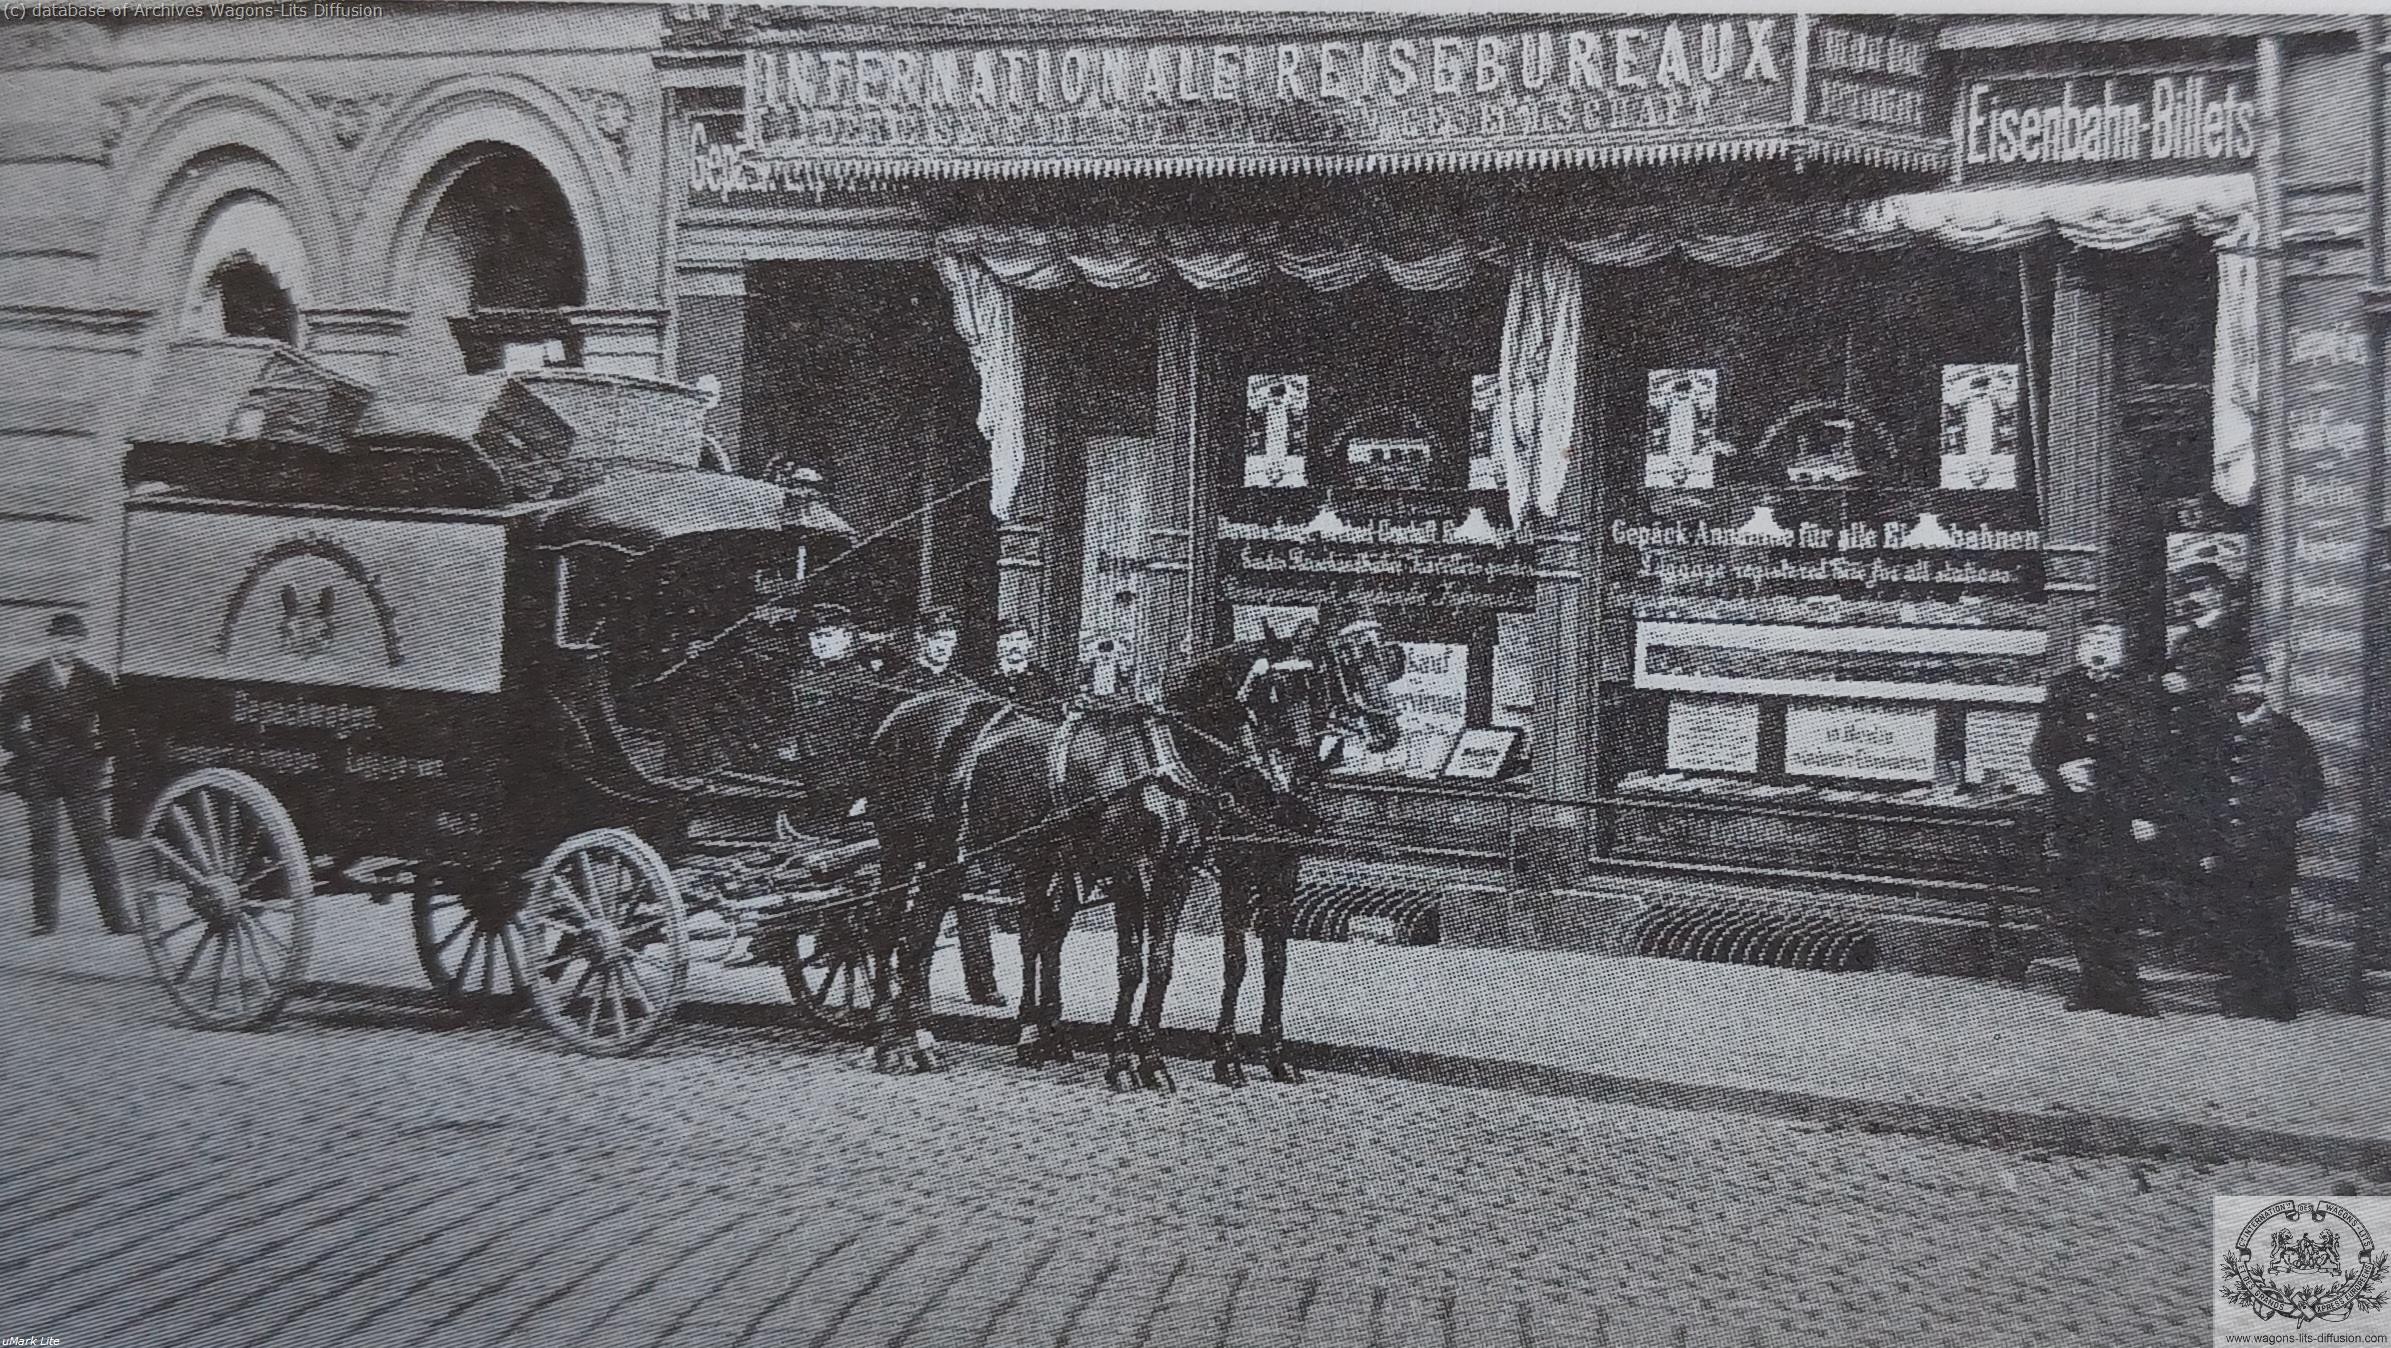 Wl agence de voyage berlin vers 1900